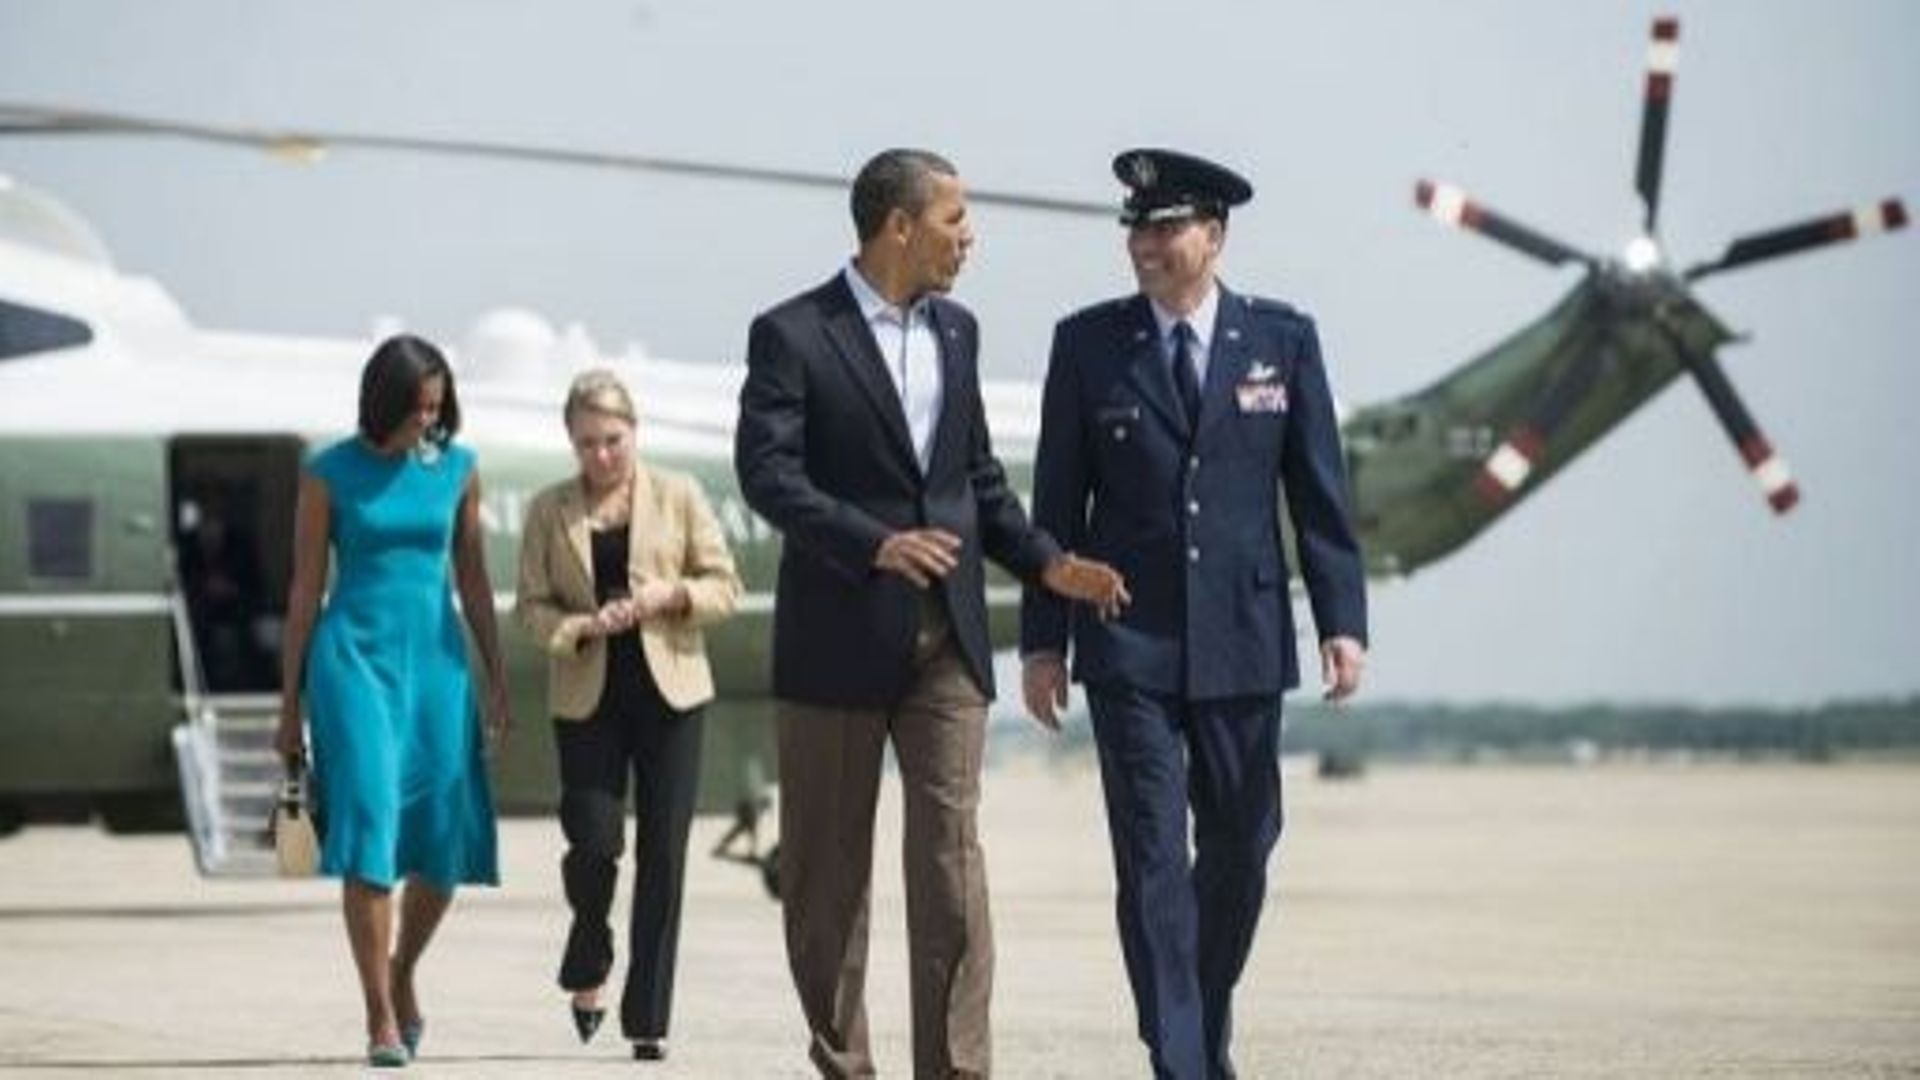 Barack Obama et son épouse Michelle Obama (g) s'apprêtent à embarquer dans l'avion présidentiel, le 5 mai 2012 à la base d'Andrews, dans le Maryland.